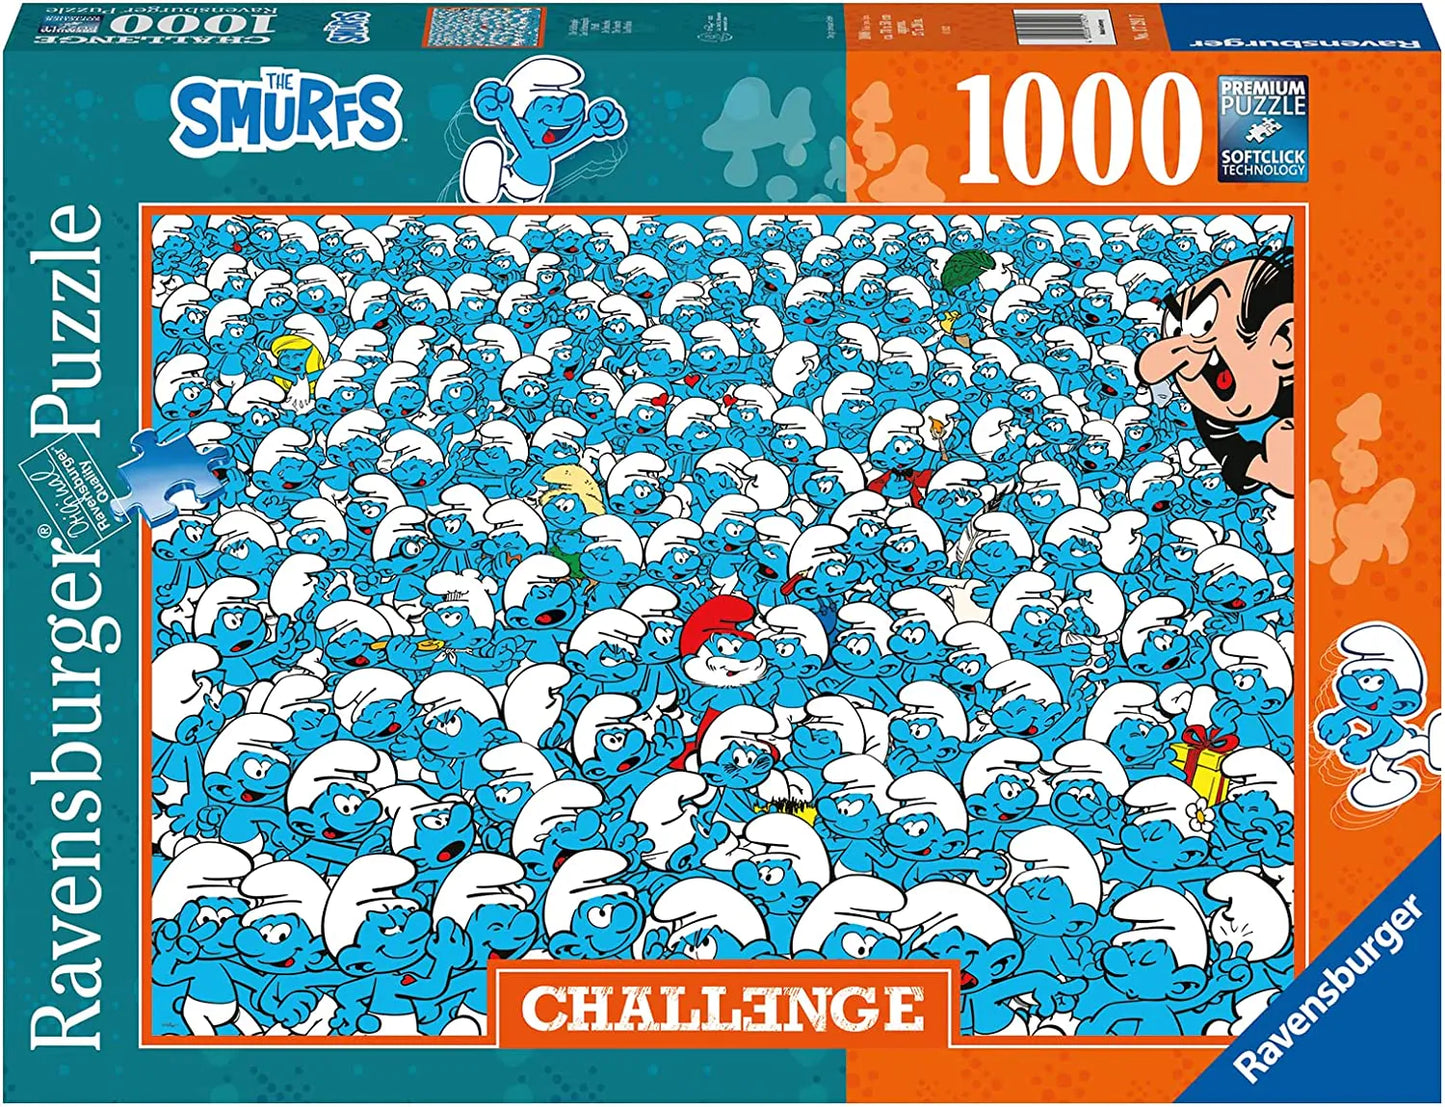 Ravensburger The Smurfs Challenge, 1000 Piece Puzzle